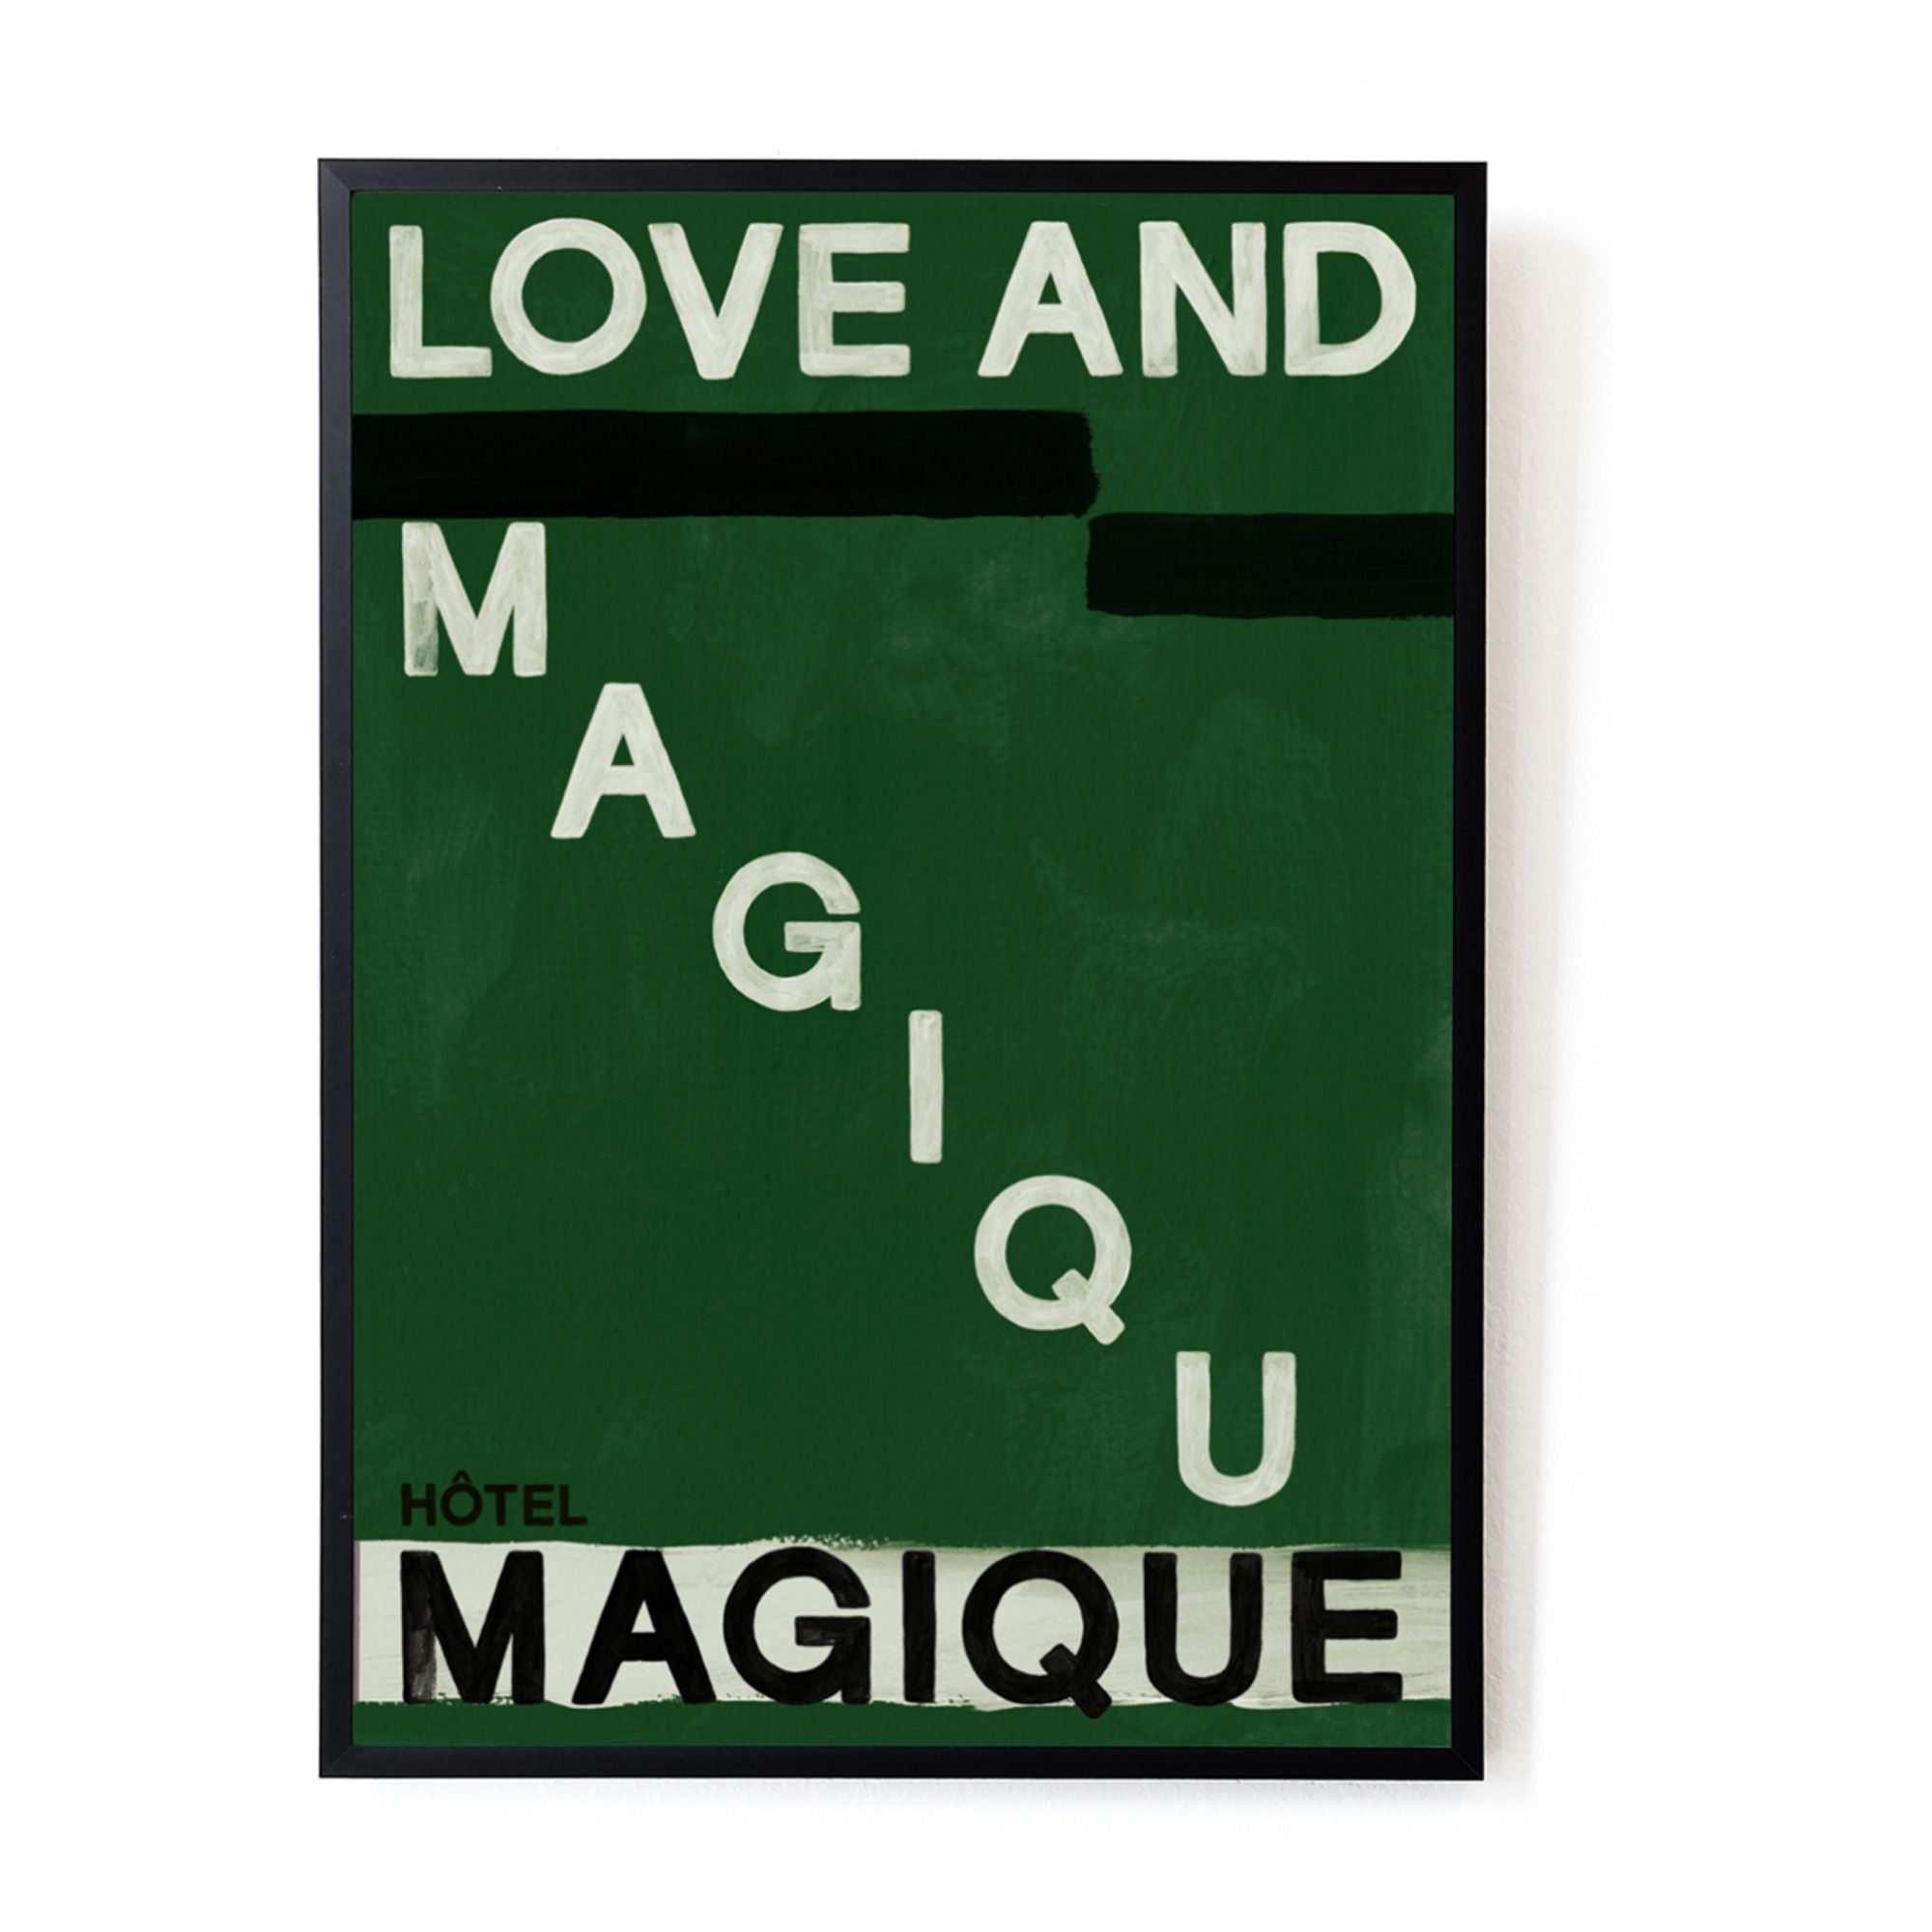 Hôtel Magique - Affiche Love and magique - Multicolore